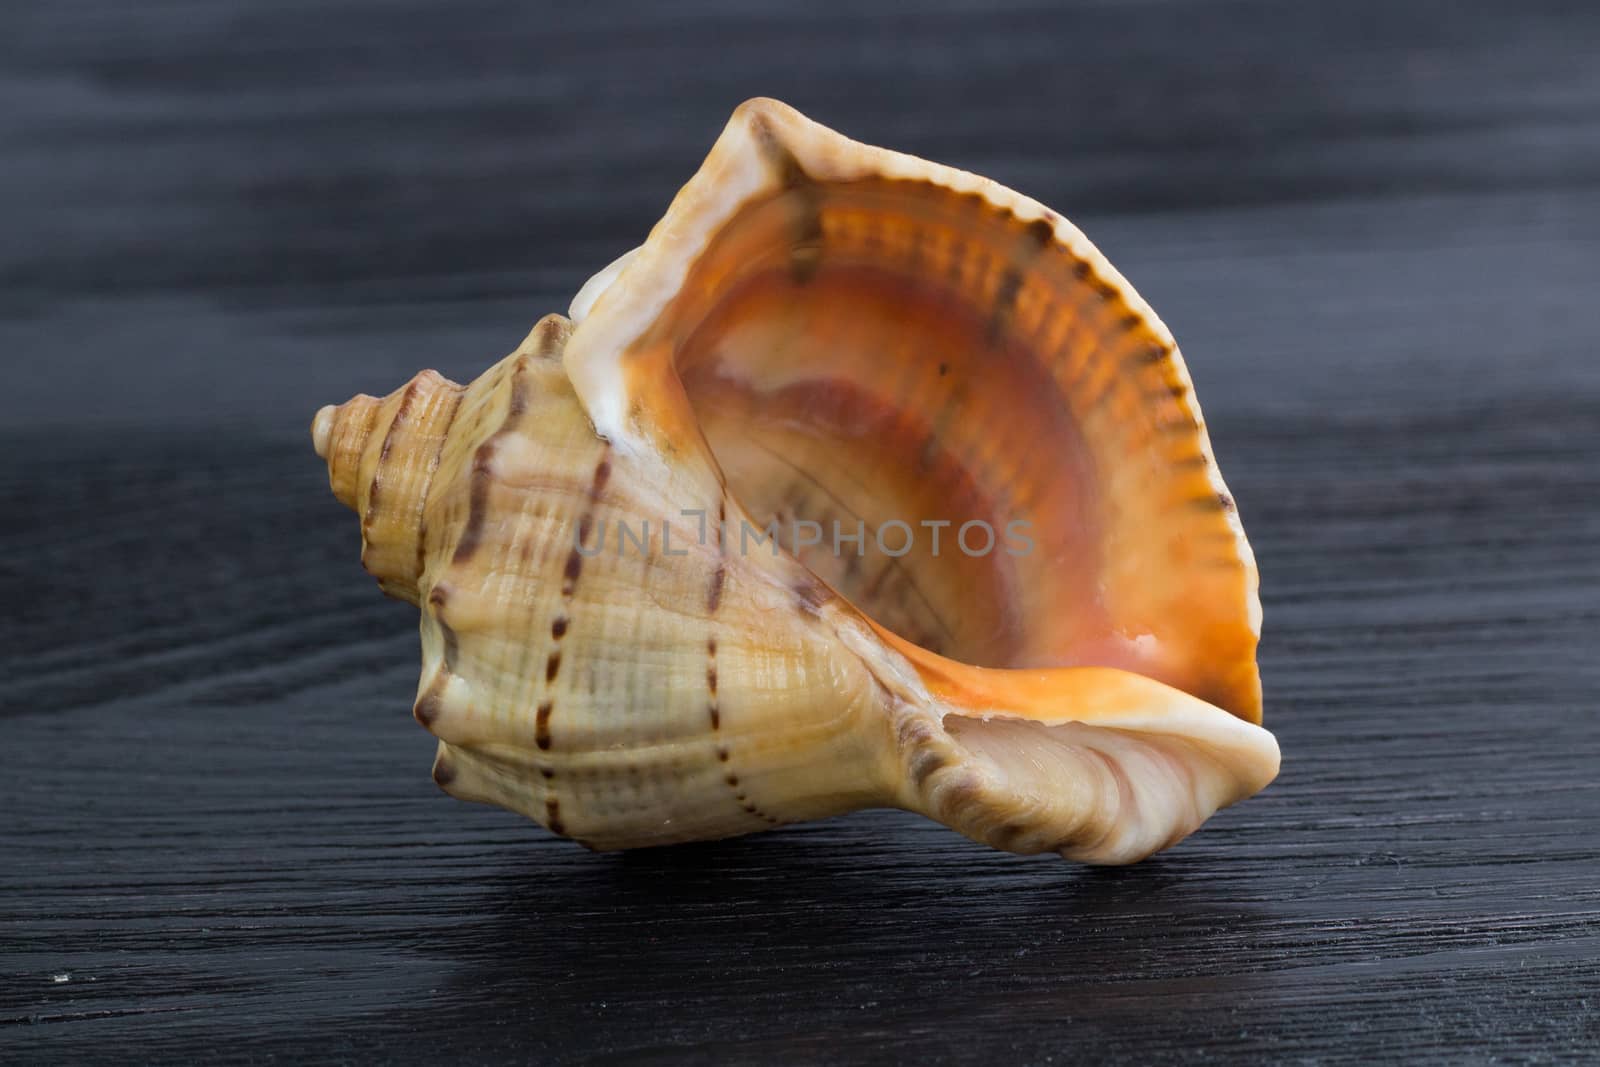 Big bright orange yellow gastropod seashell close-up on black wo by VeraVerano